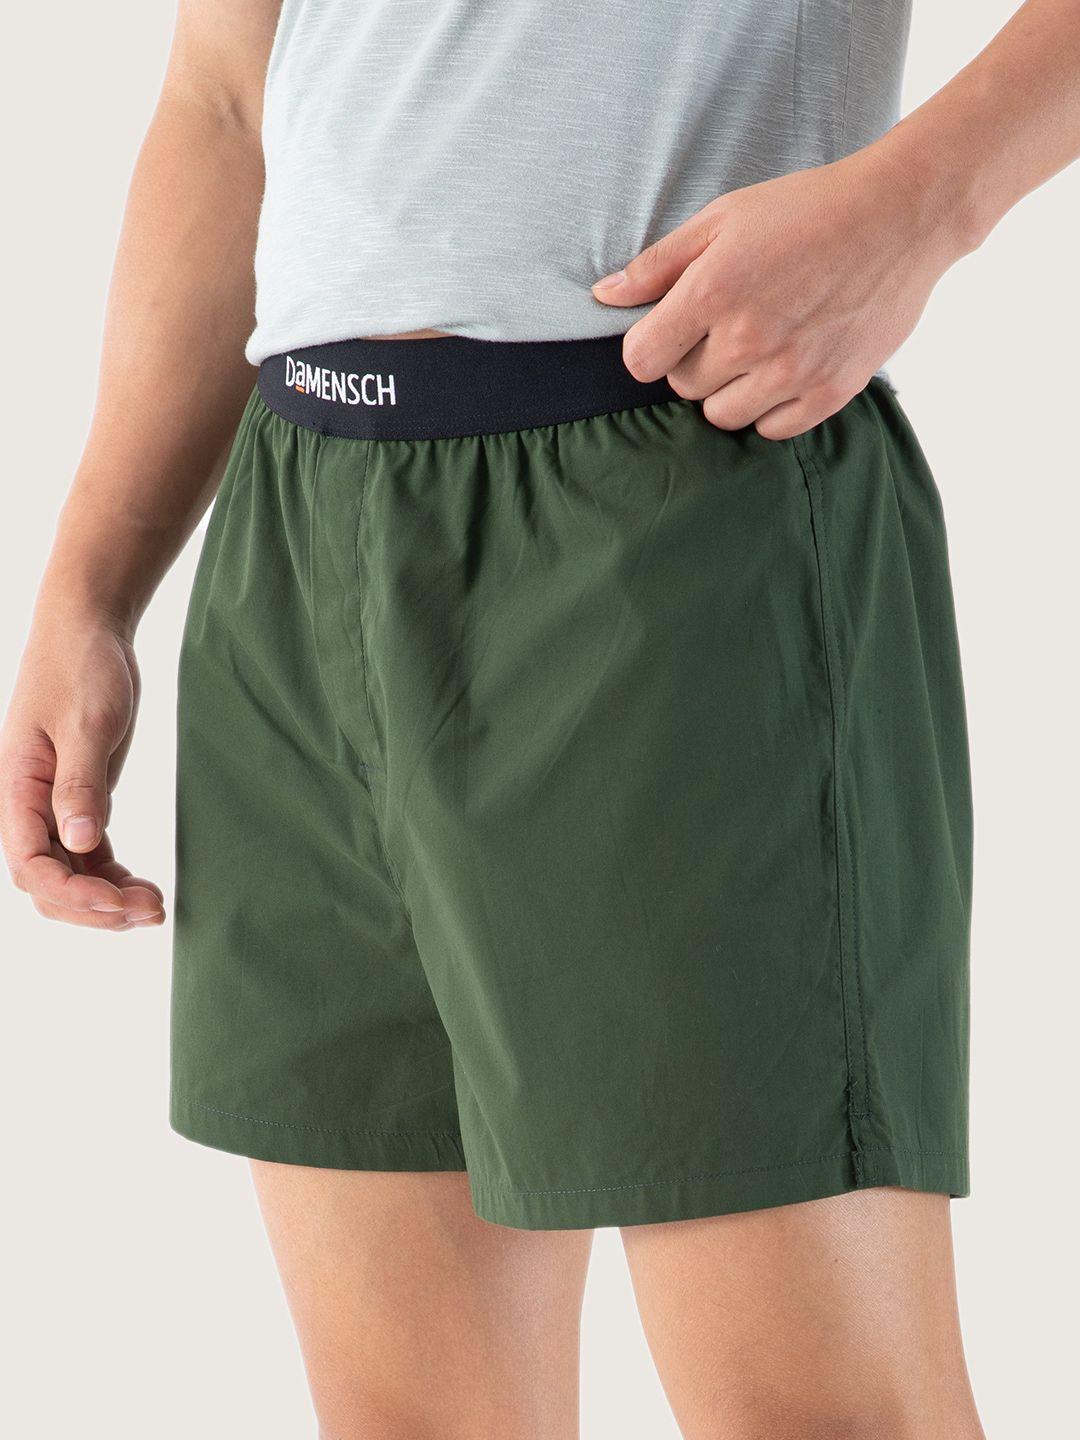 damensch men ultra-light cotton regular fit boxers- dam-sld-sbx-ryg